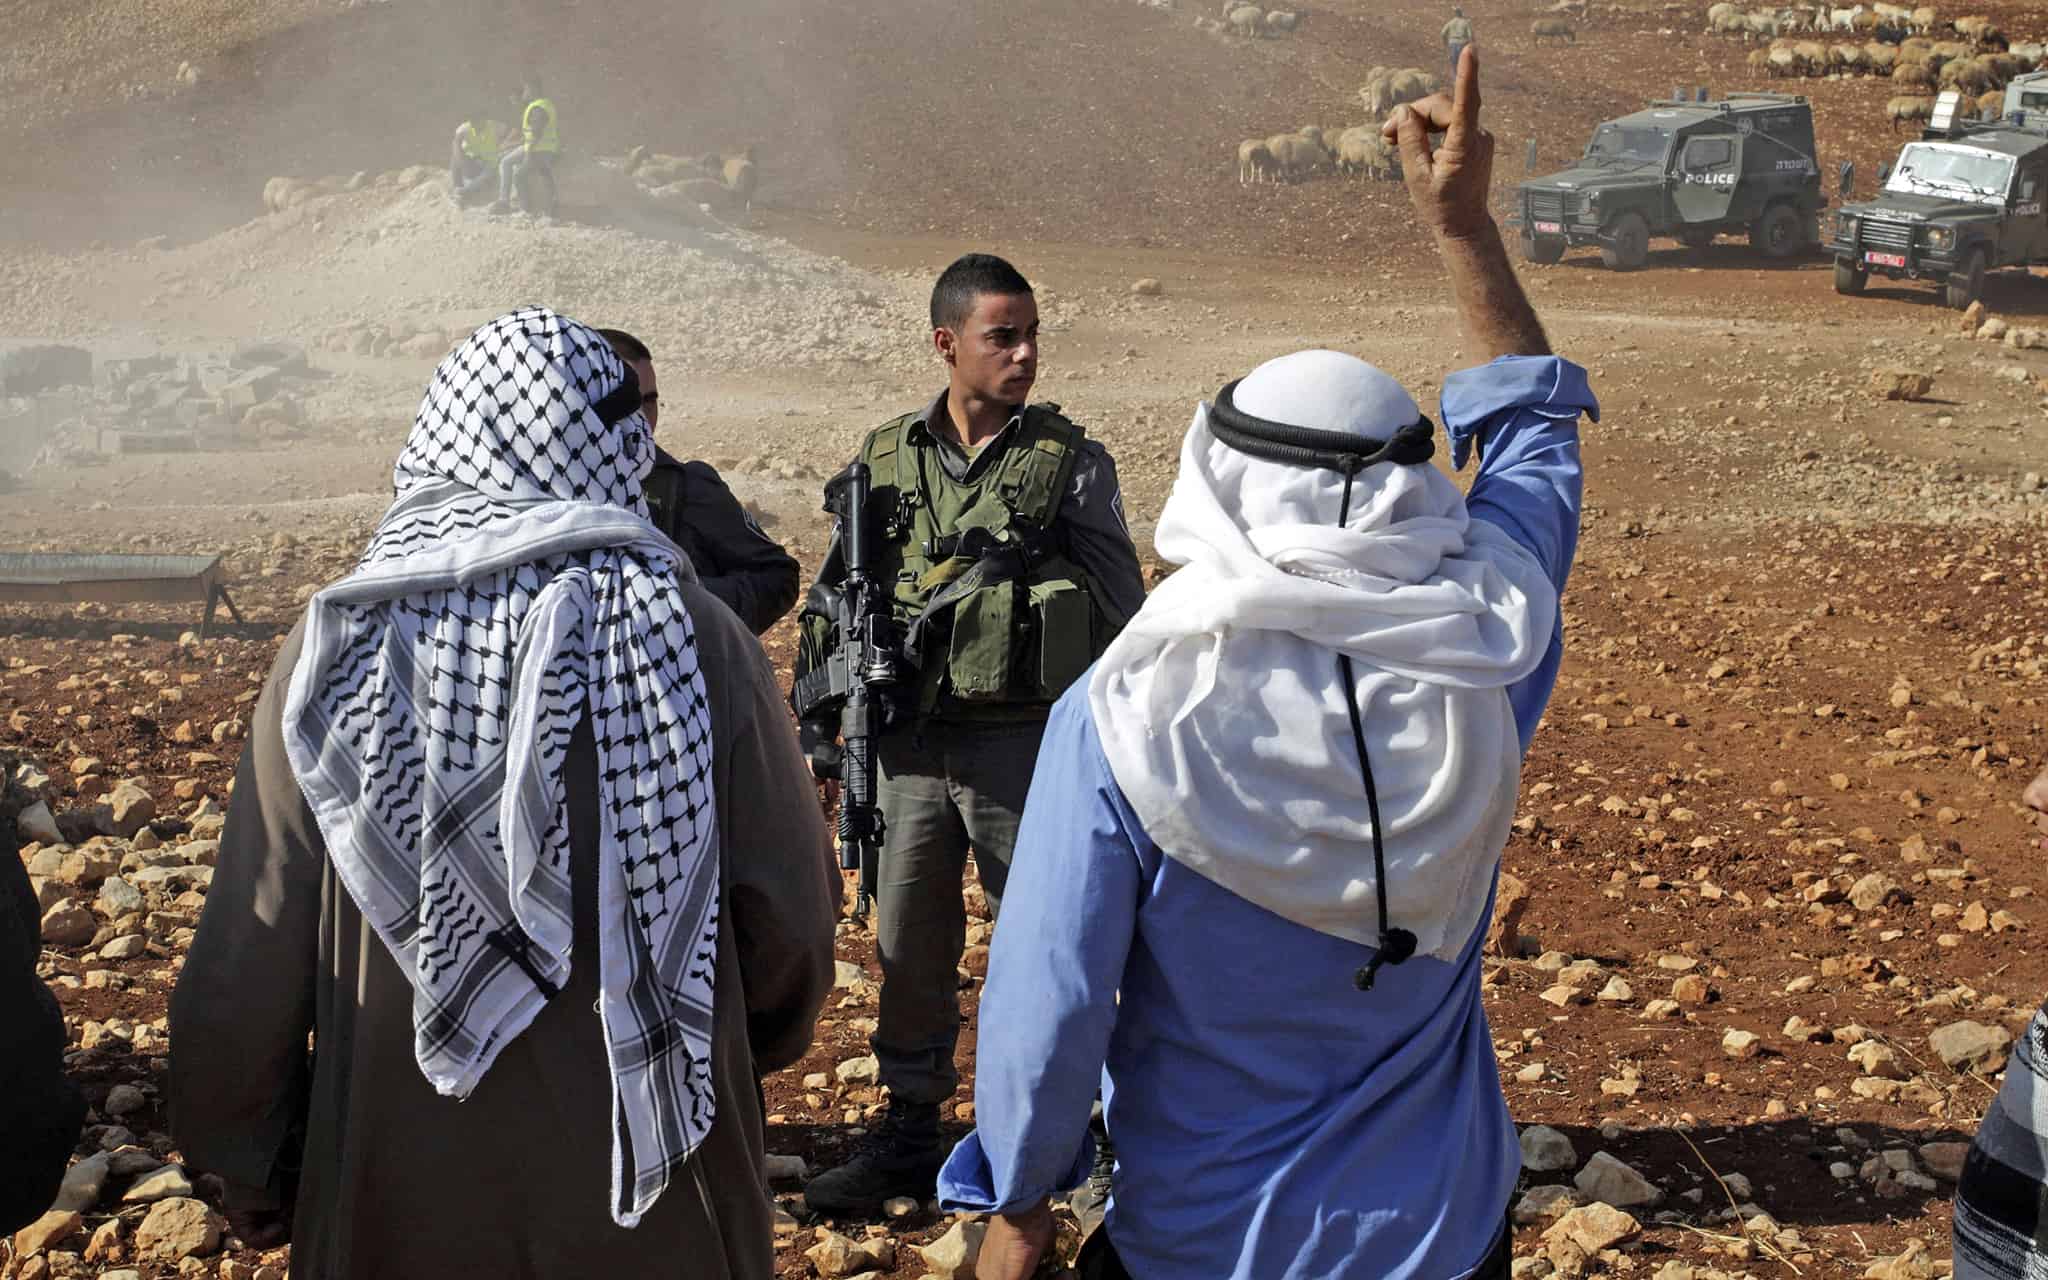 תושבים בעקרבה מתעמתים על חיילים ב-29 באוקטובר 2013, אחרי שצה"ל הרס מבנים לא חוקיים בכפר (צילום: AP Photo/Nasser Ishtayeh)